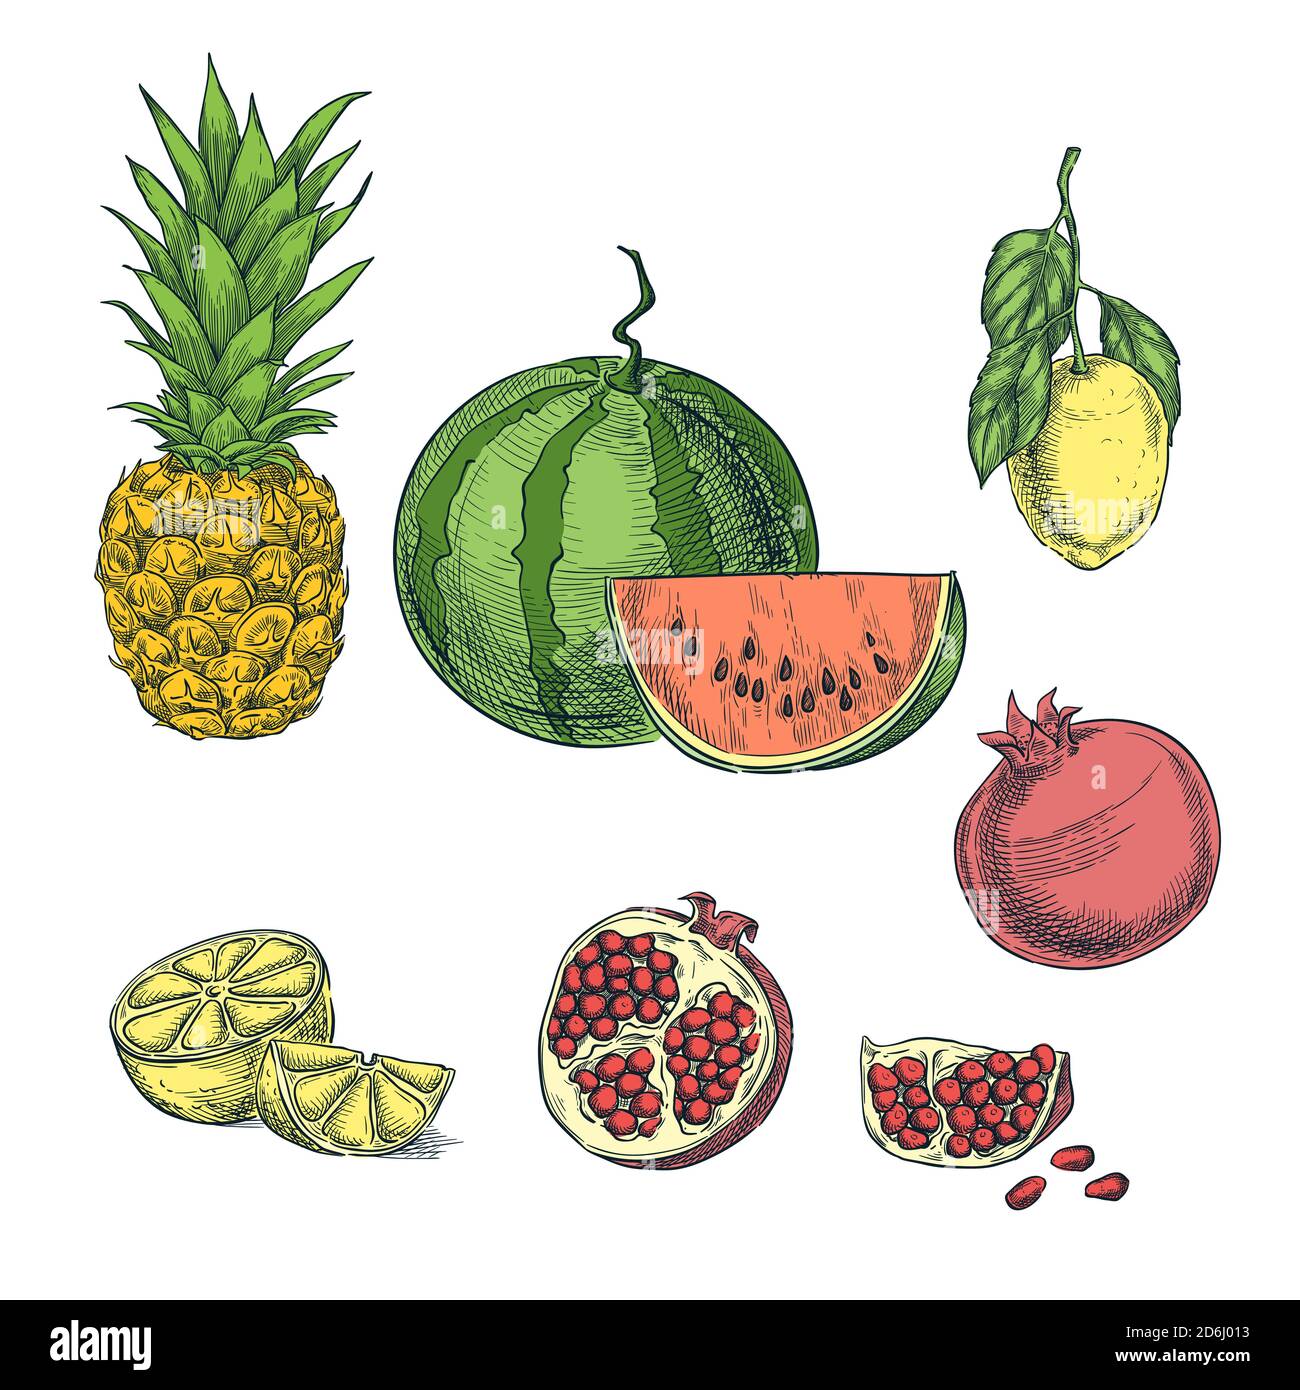 Tropische bunte Früchte Skizze Vektor Illustration. Ananas, Zitrone, Wassermelone, Granatapfel handgezeichnet isolierte Designelemente. Stock Vektor